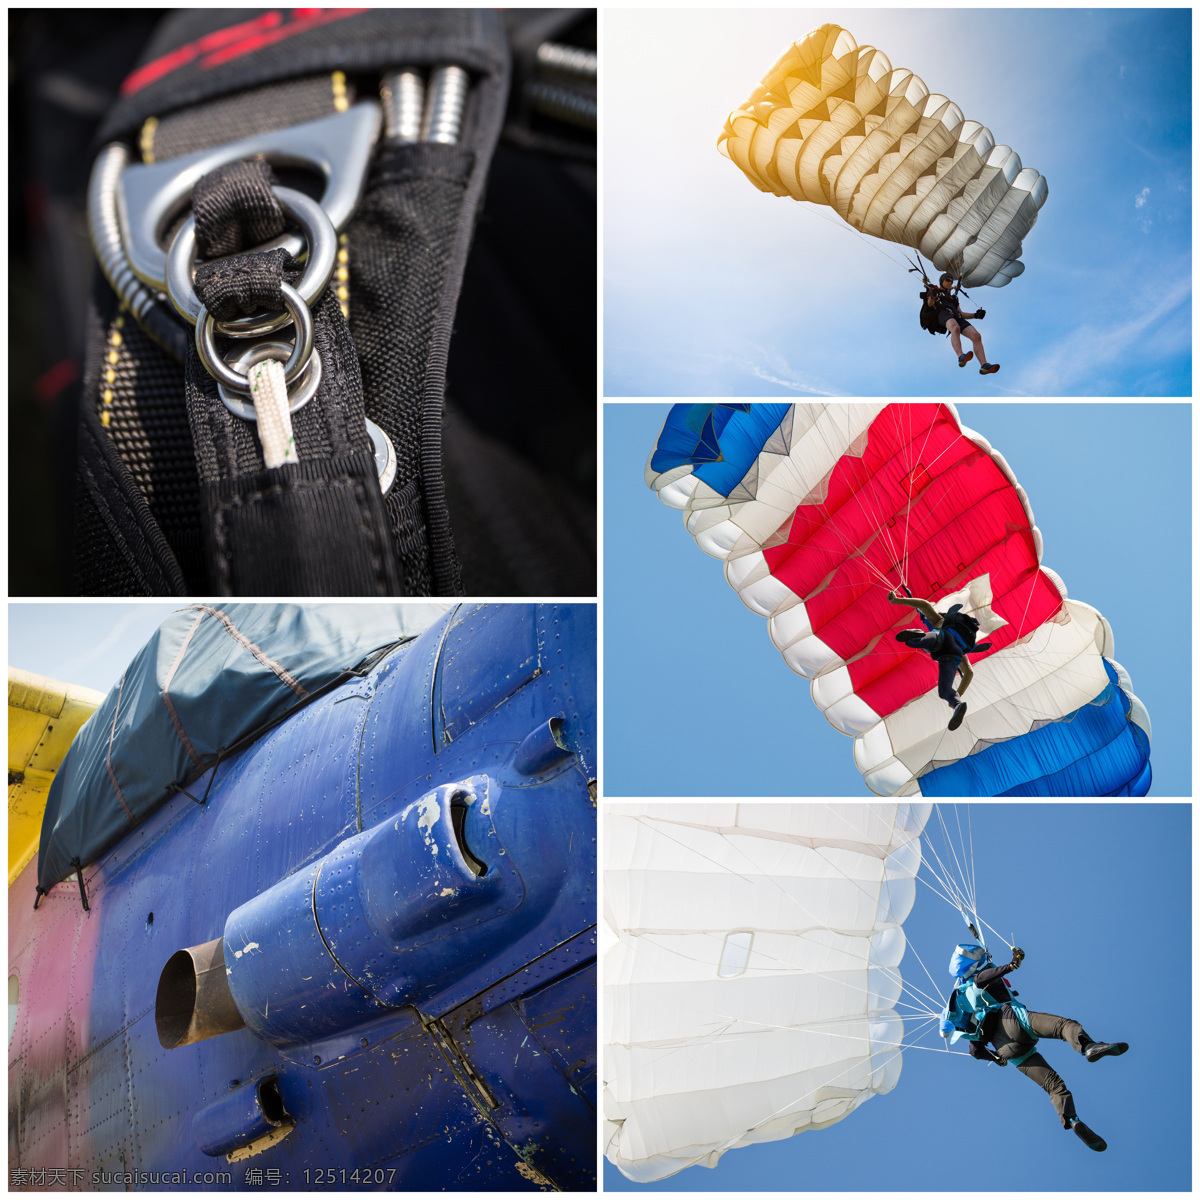 跳伞 装备 跳伞装备图片 空中 天空 运动 运动员 降落伞 体育运动 生活百科 黑色